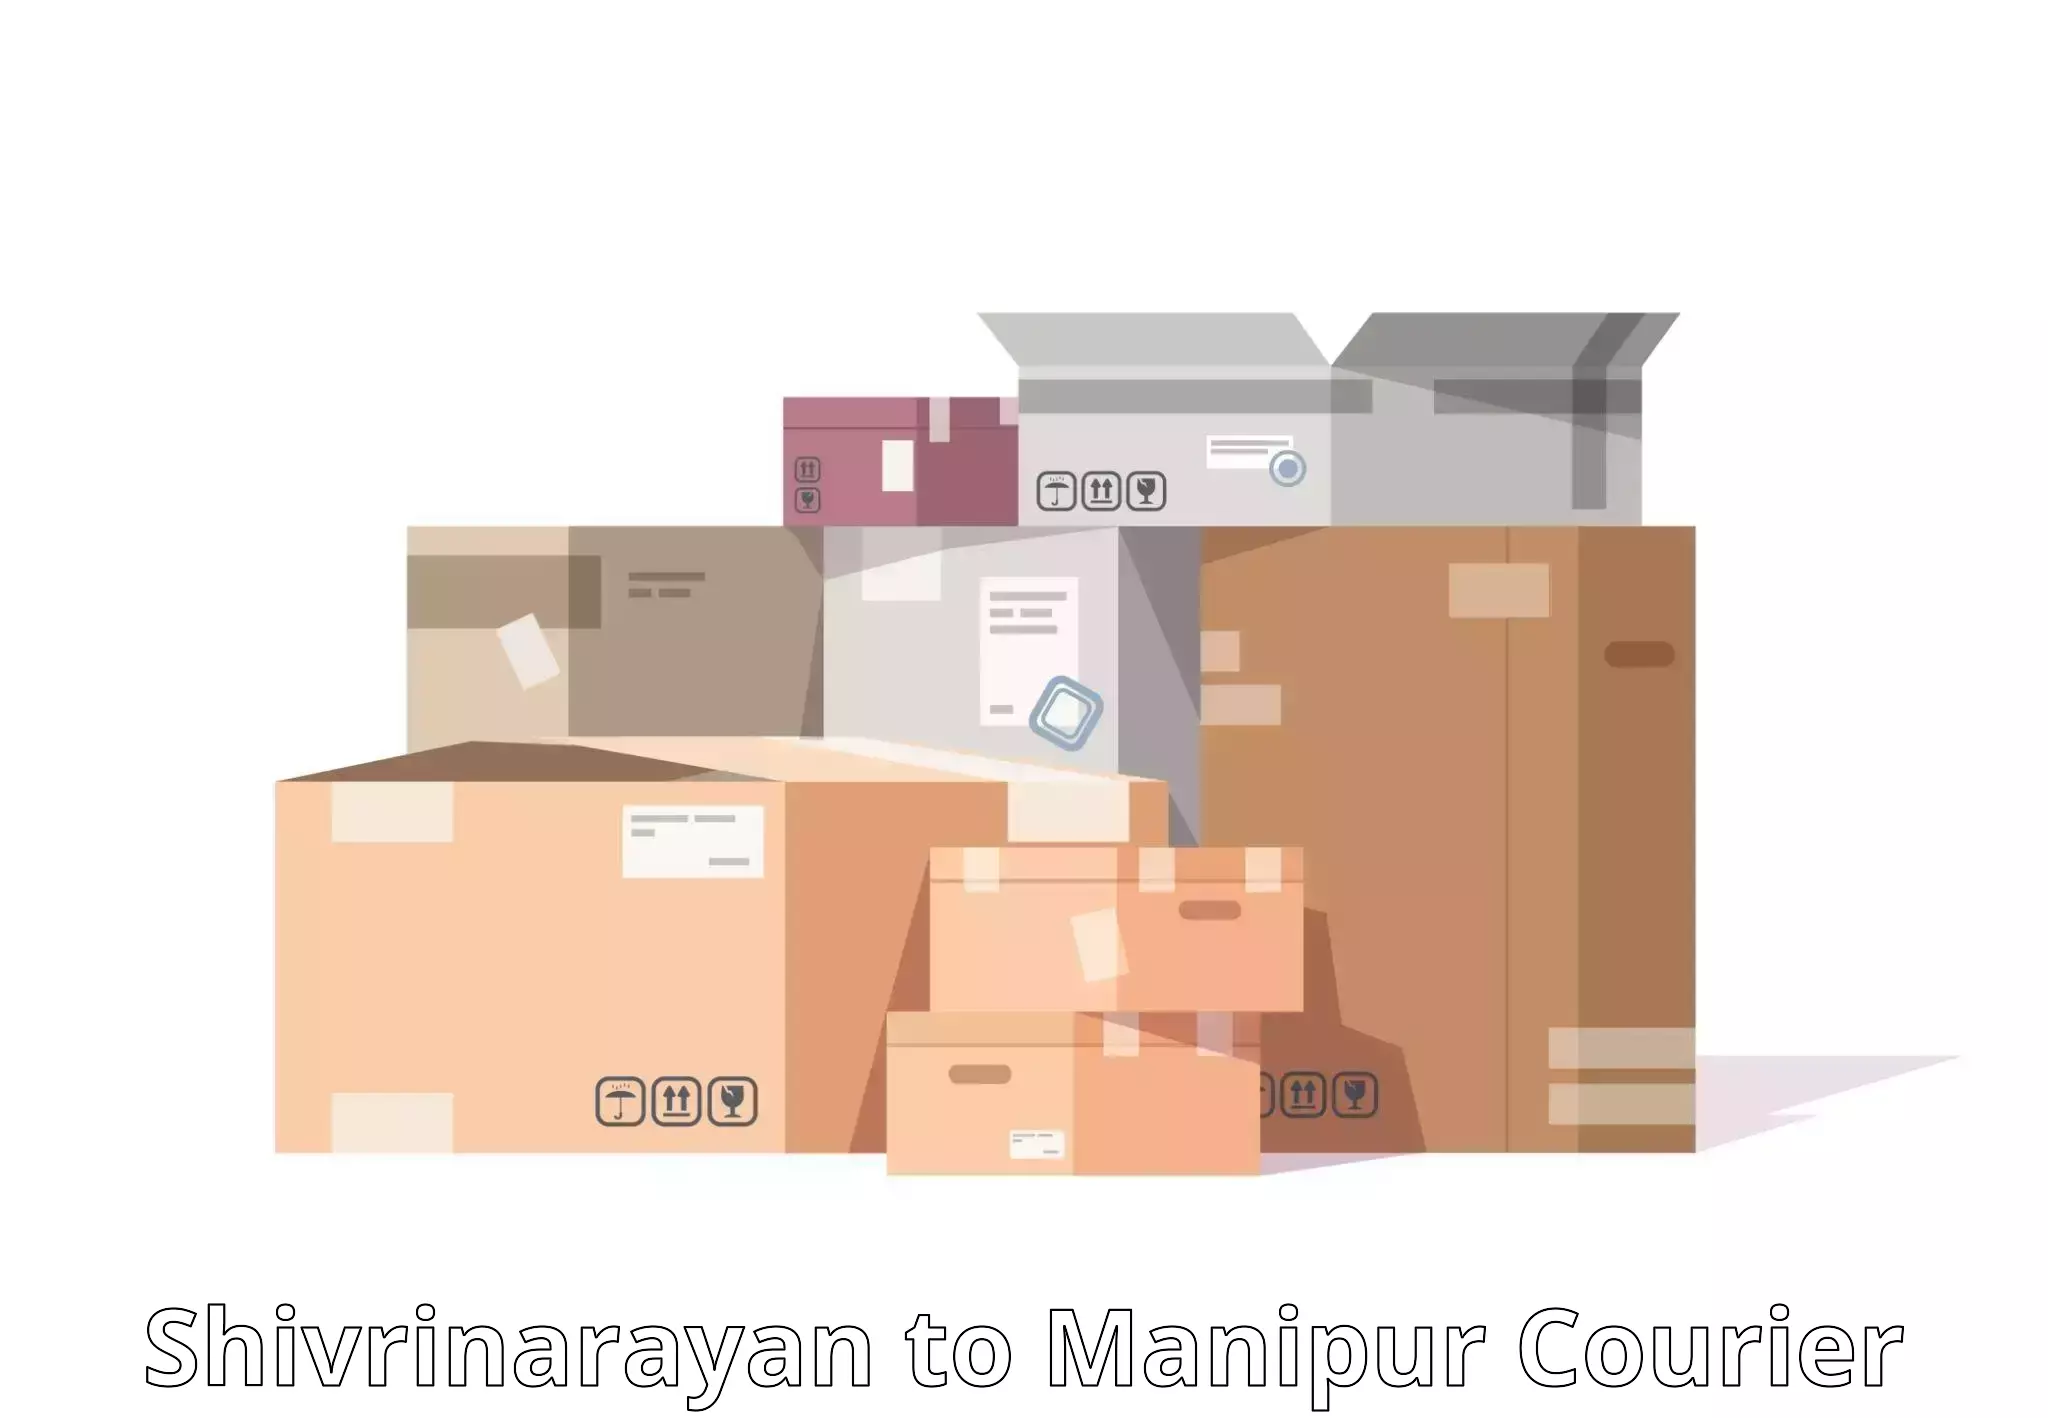 Affordable parcel service Shivrinarayan to Moirang